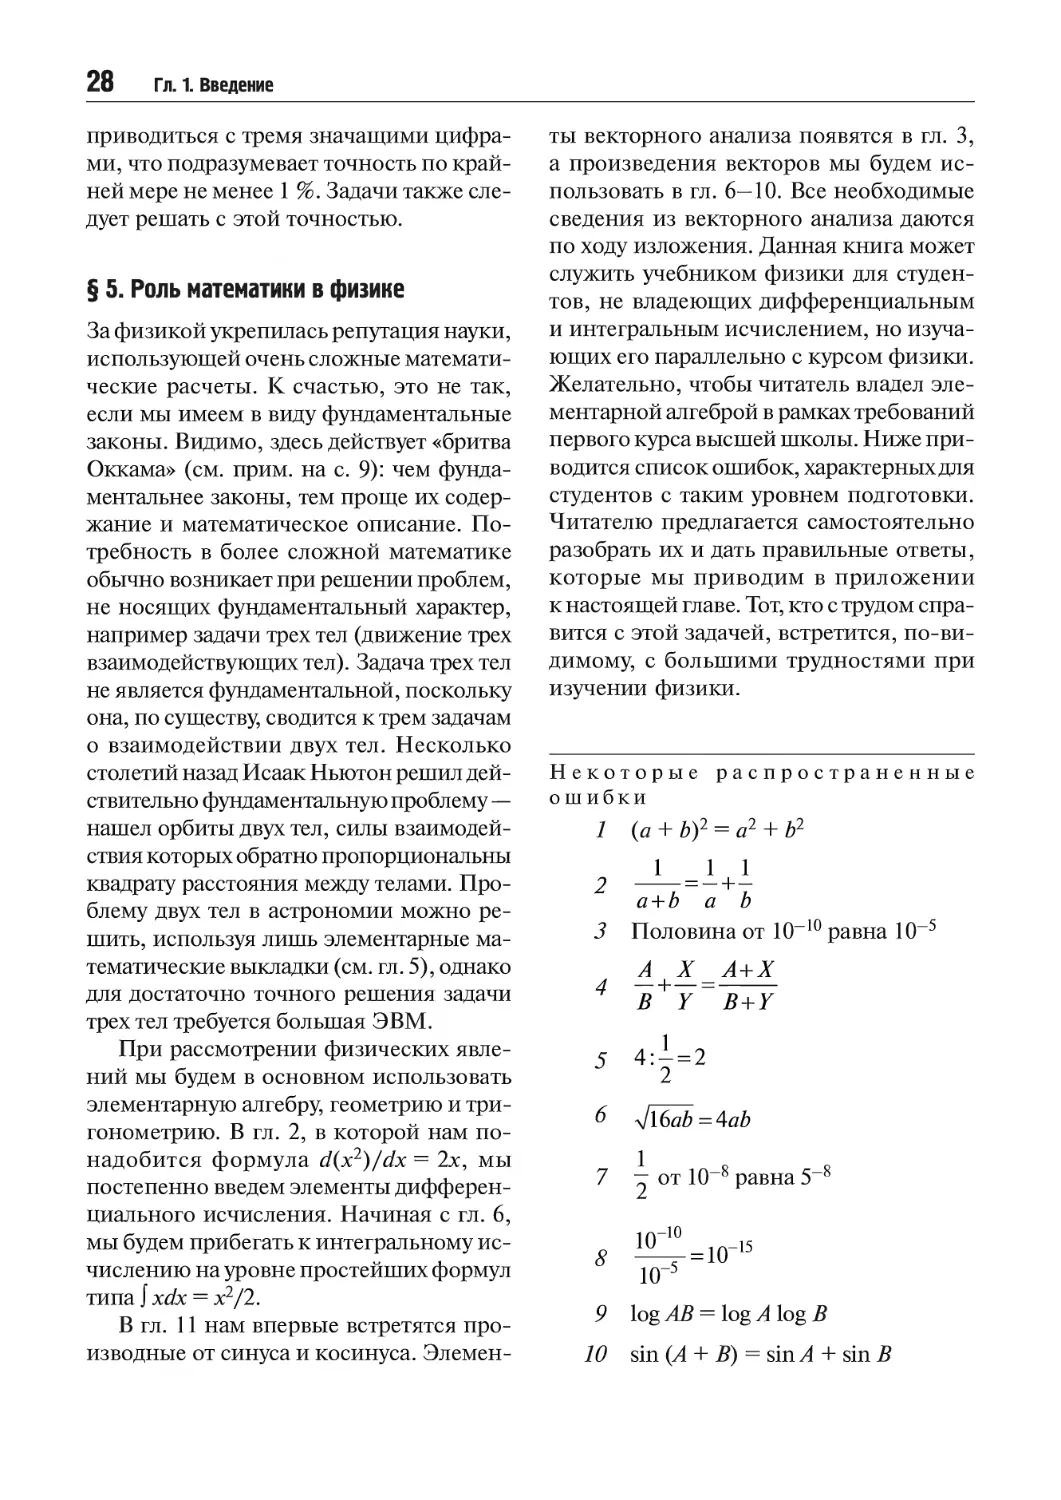 § 5. Роль математики в физике